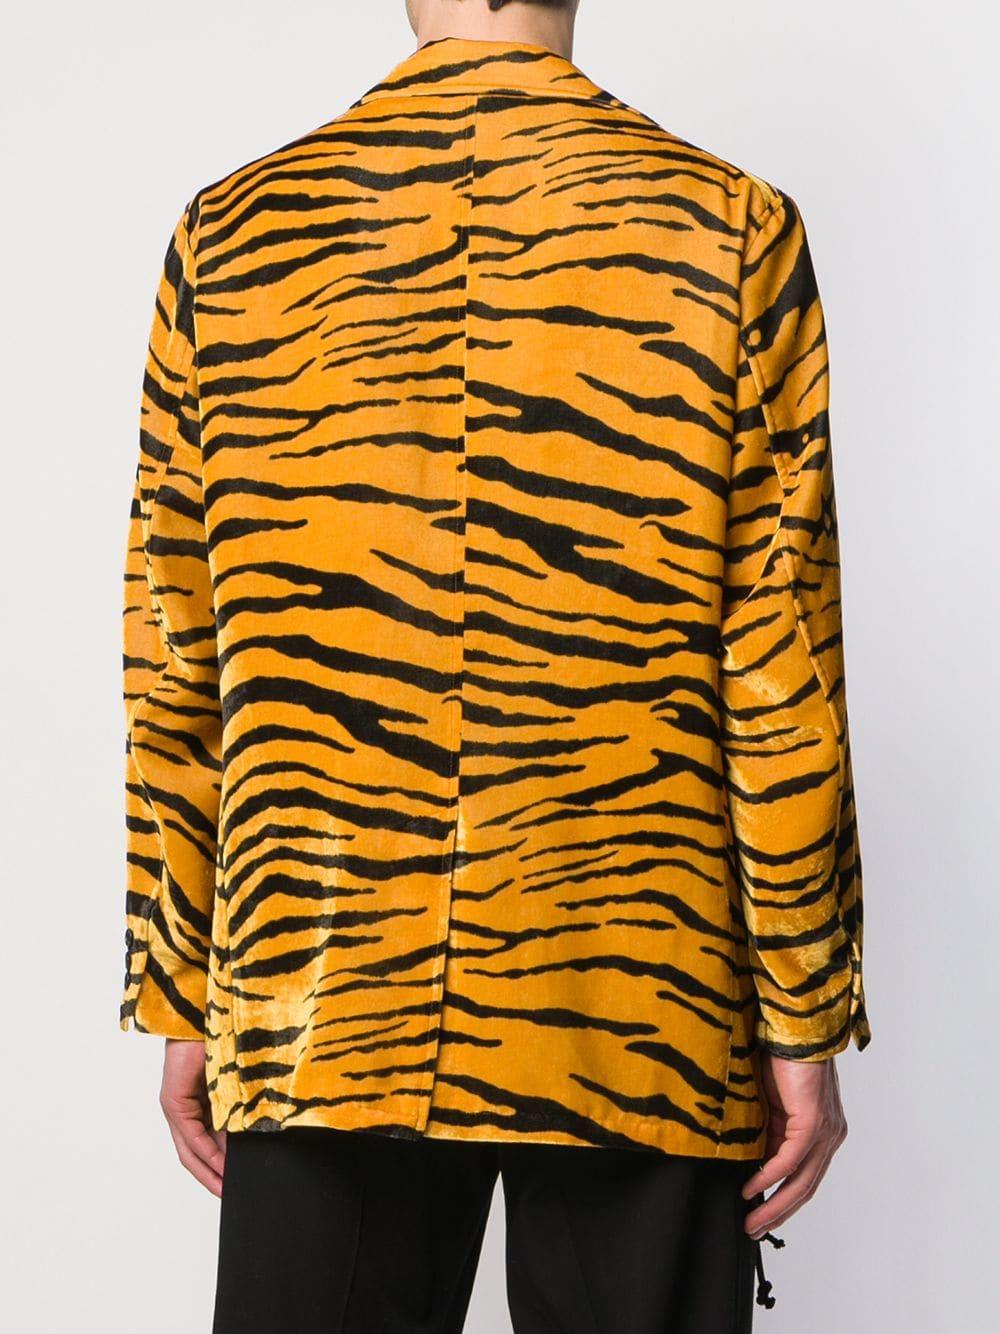 Needles Tiger Print Velvet Blazer in Yellow for Men - Lyst